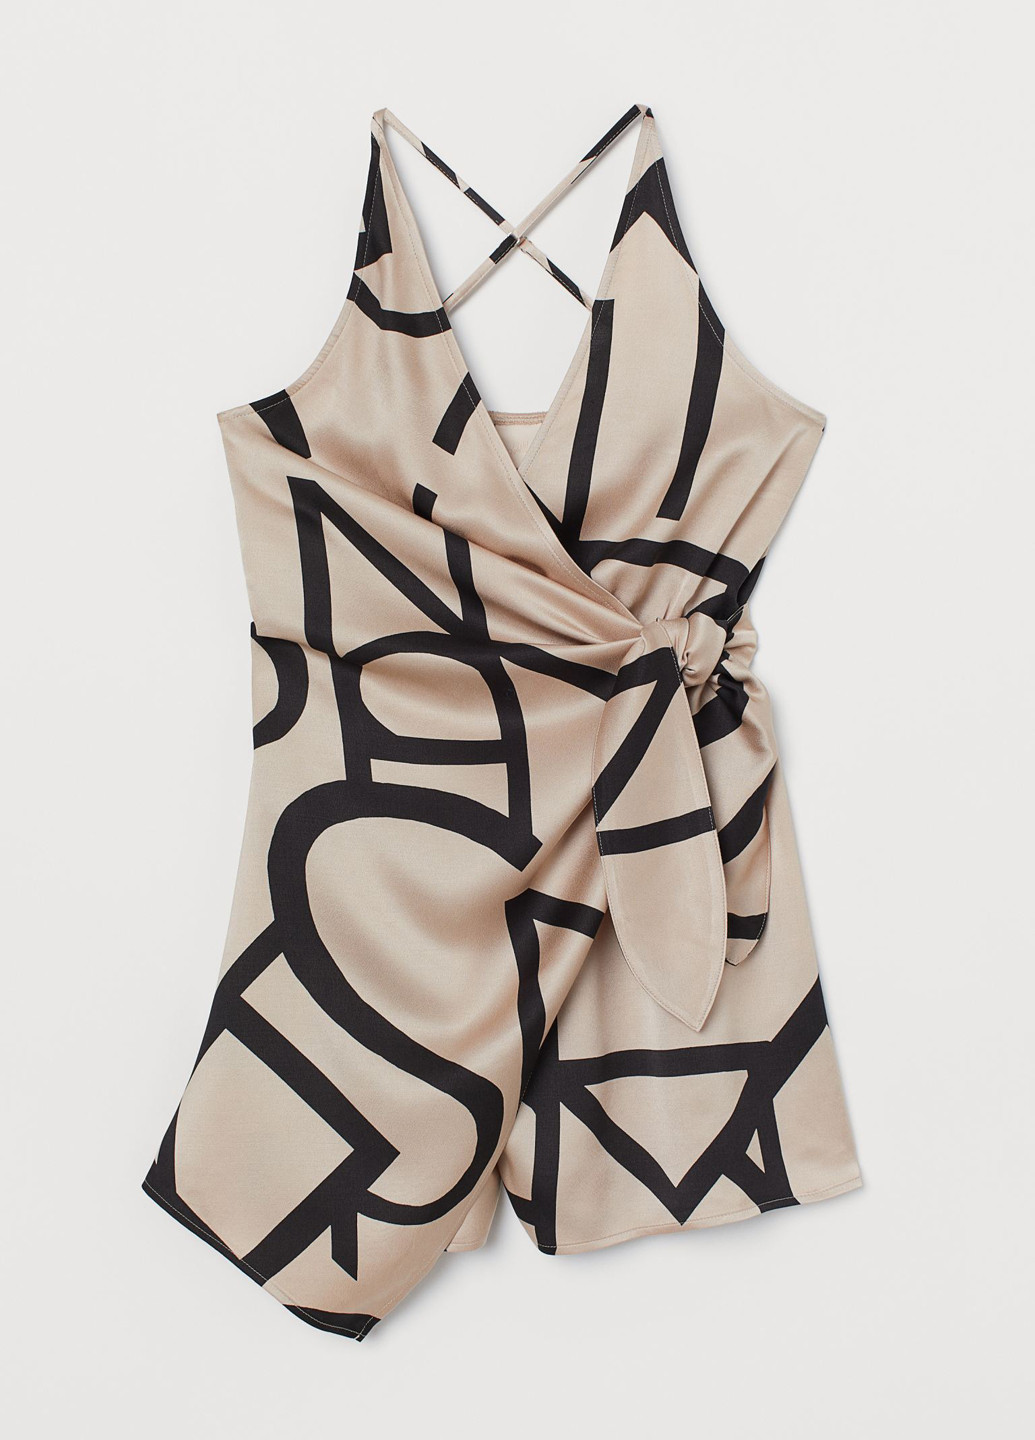 Комбинезон H&M комбинезон-шорты рисунок бежевый кэжуал атлас, вискоза